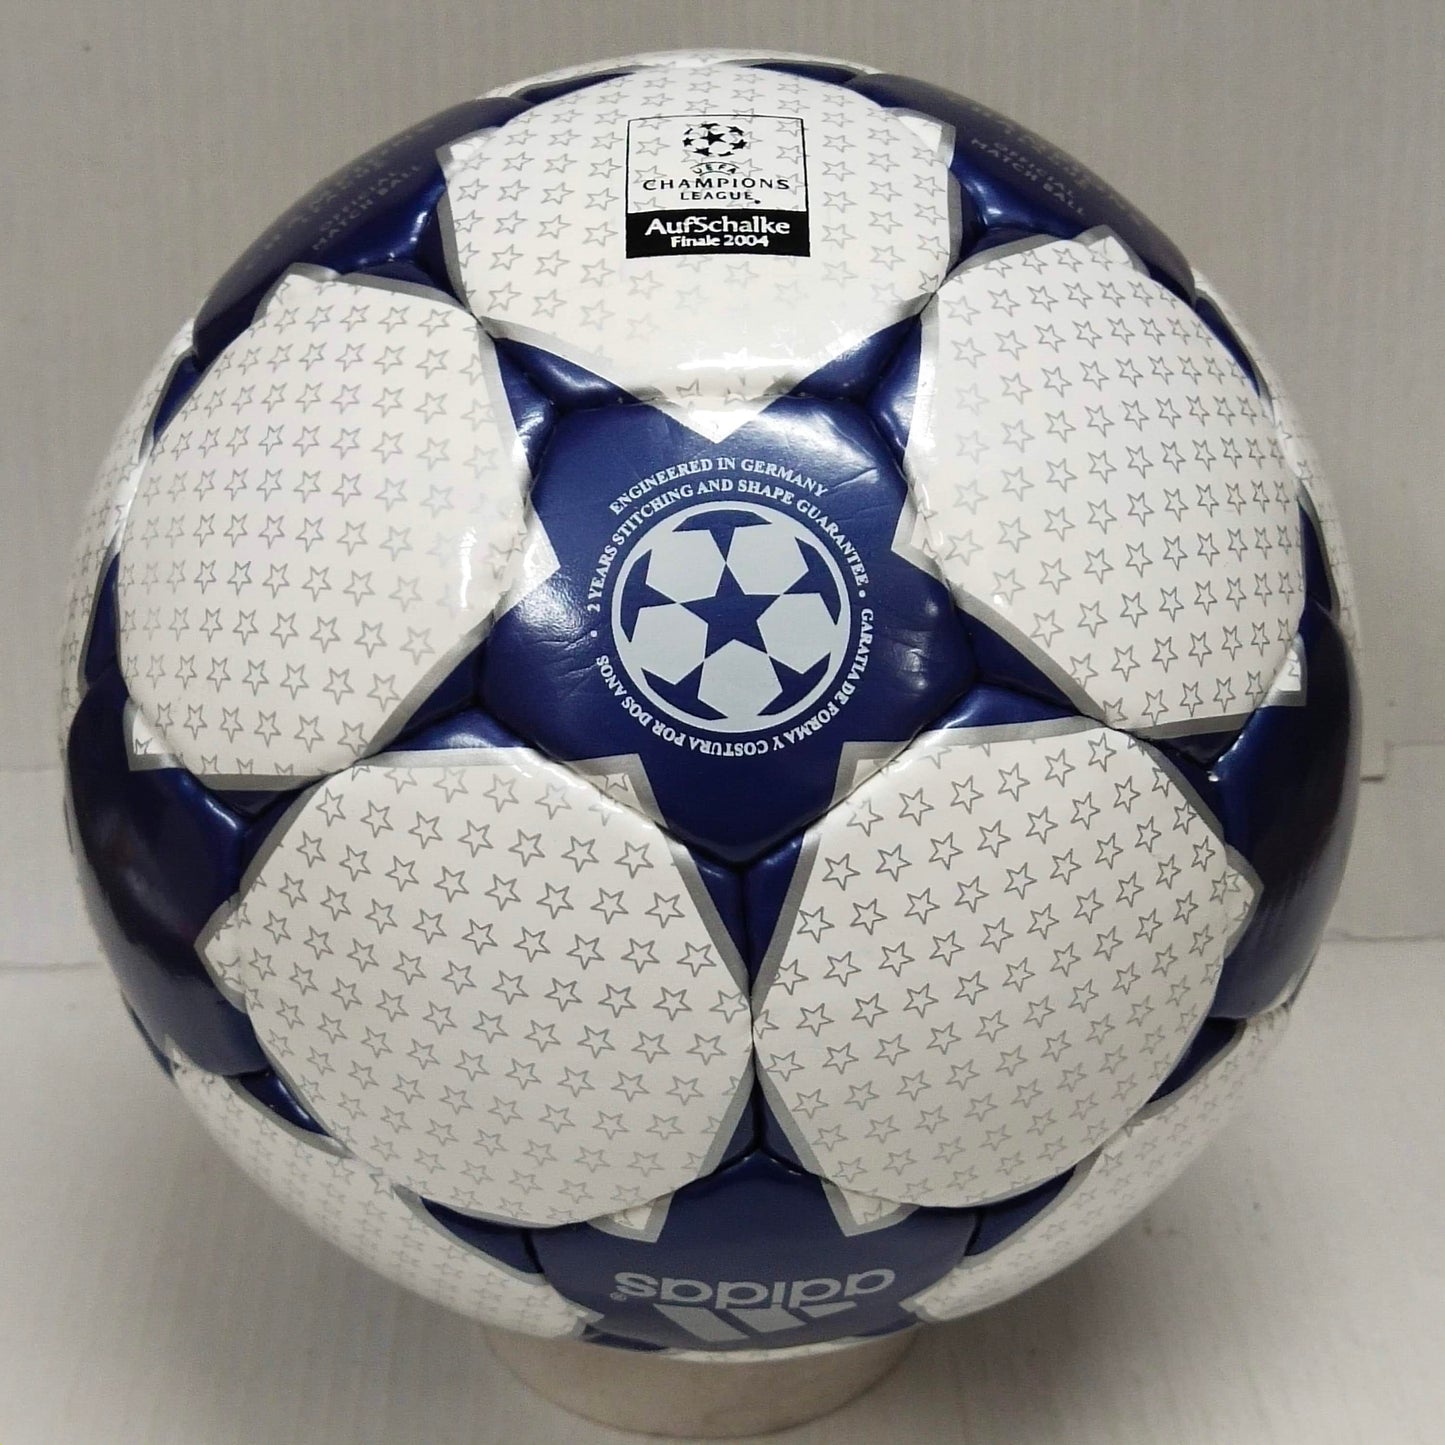 Adidas Finale AufSchalke | 2003-2004 | Final Ball | UEFA Champions League Ball | Size 5 04